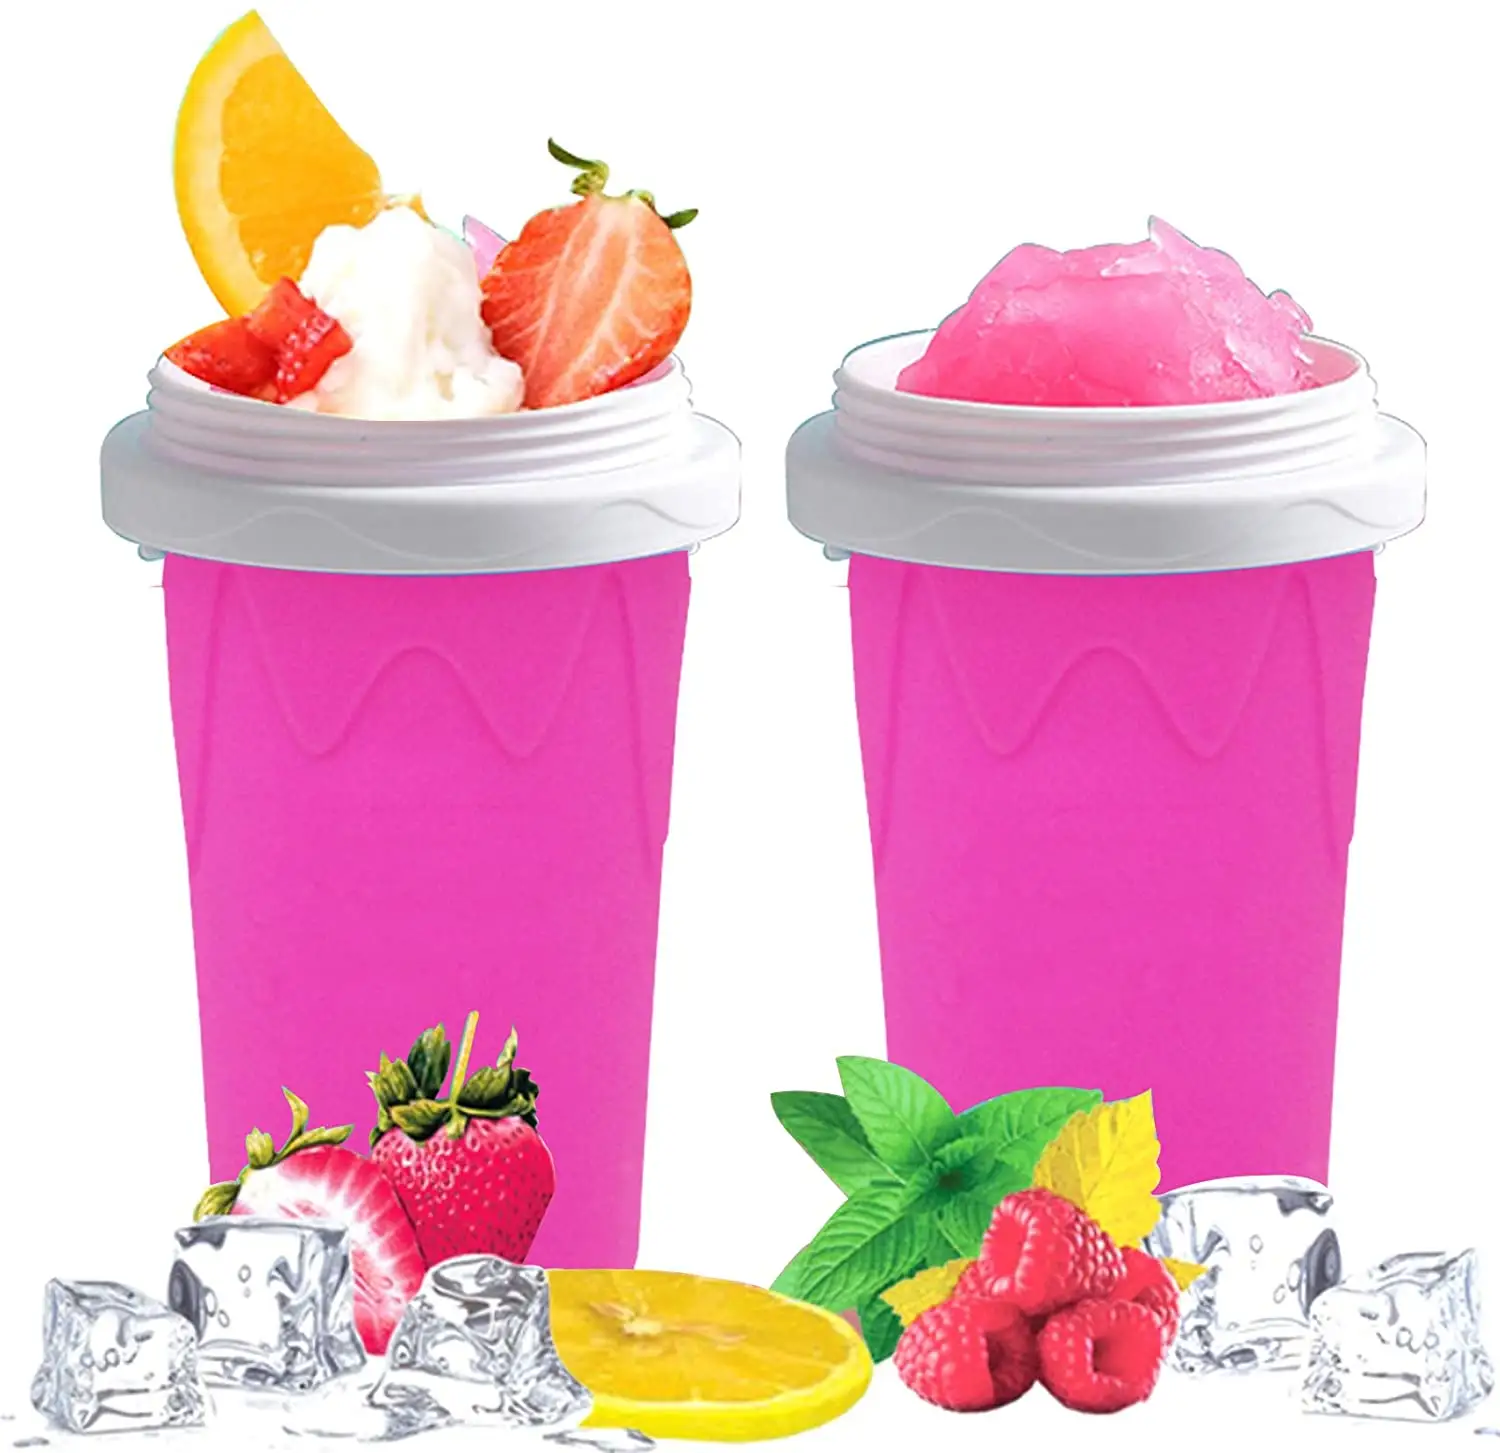 Tik Tok Pinch Cup Gefroren machen Einfrieren Lebensmittel qualität Silikon Slushies Drink Cup Smoothie